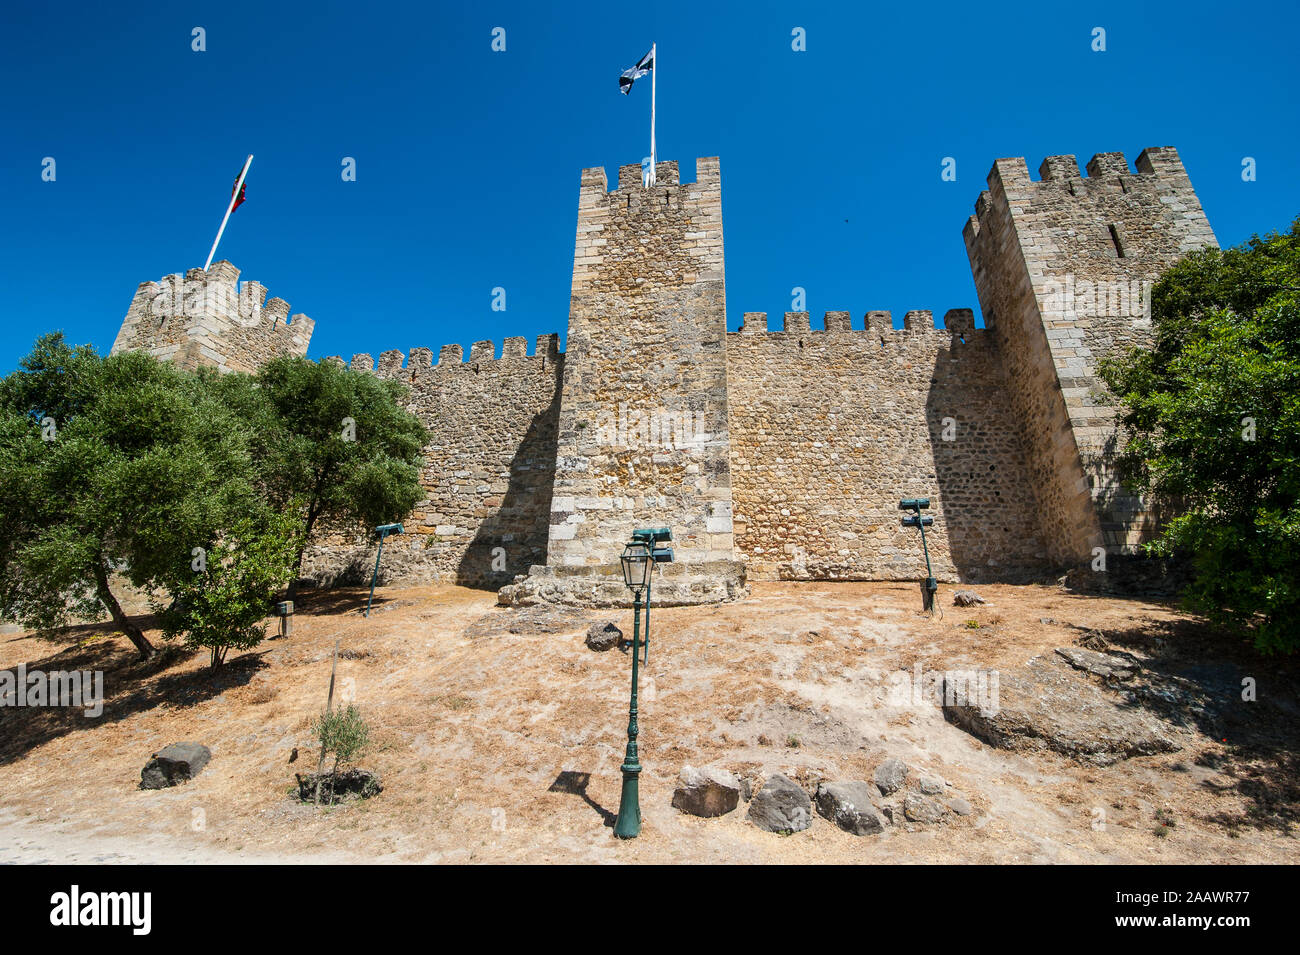 Basso angolo vista delle mura fortificate di Castelo Sao Jorge contro il cielo blu chiaro, Lisbona, Portogallo Foto Stock